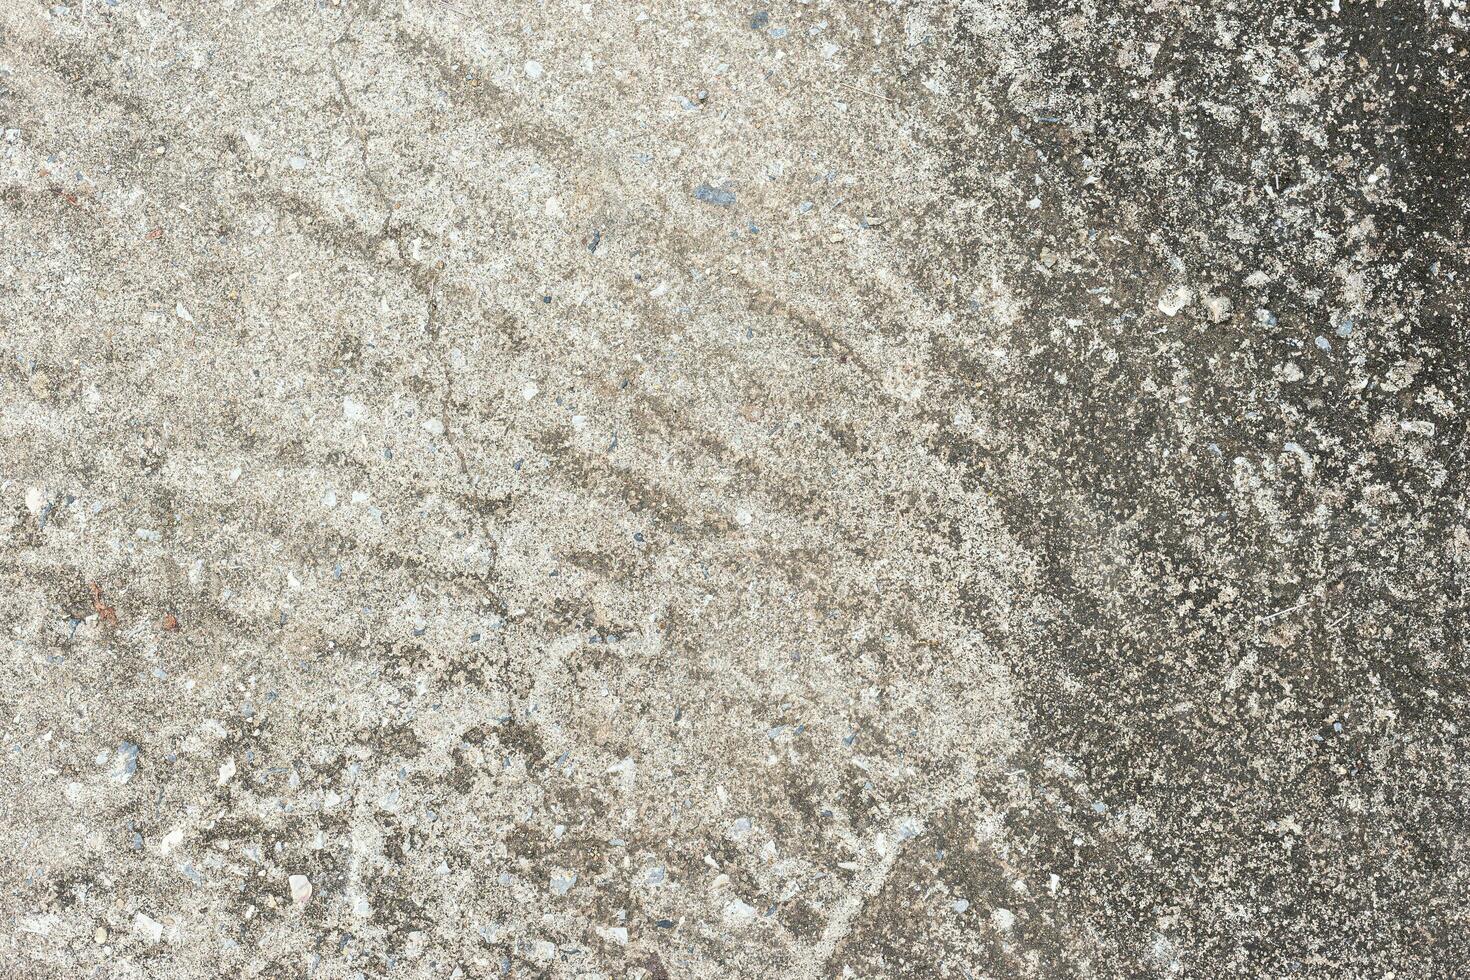 abstrato velho sujo Sombrio cimento parede fundo em terra textura. foto